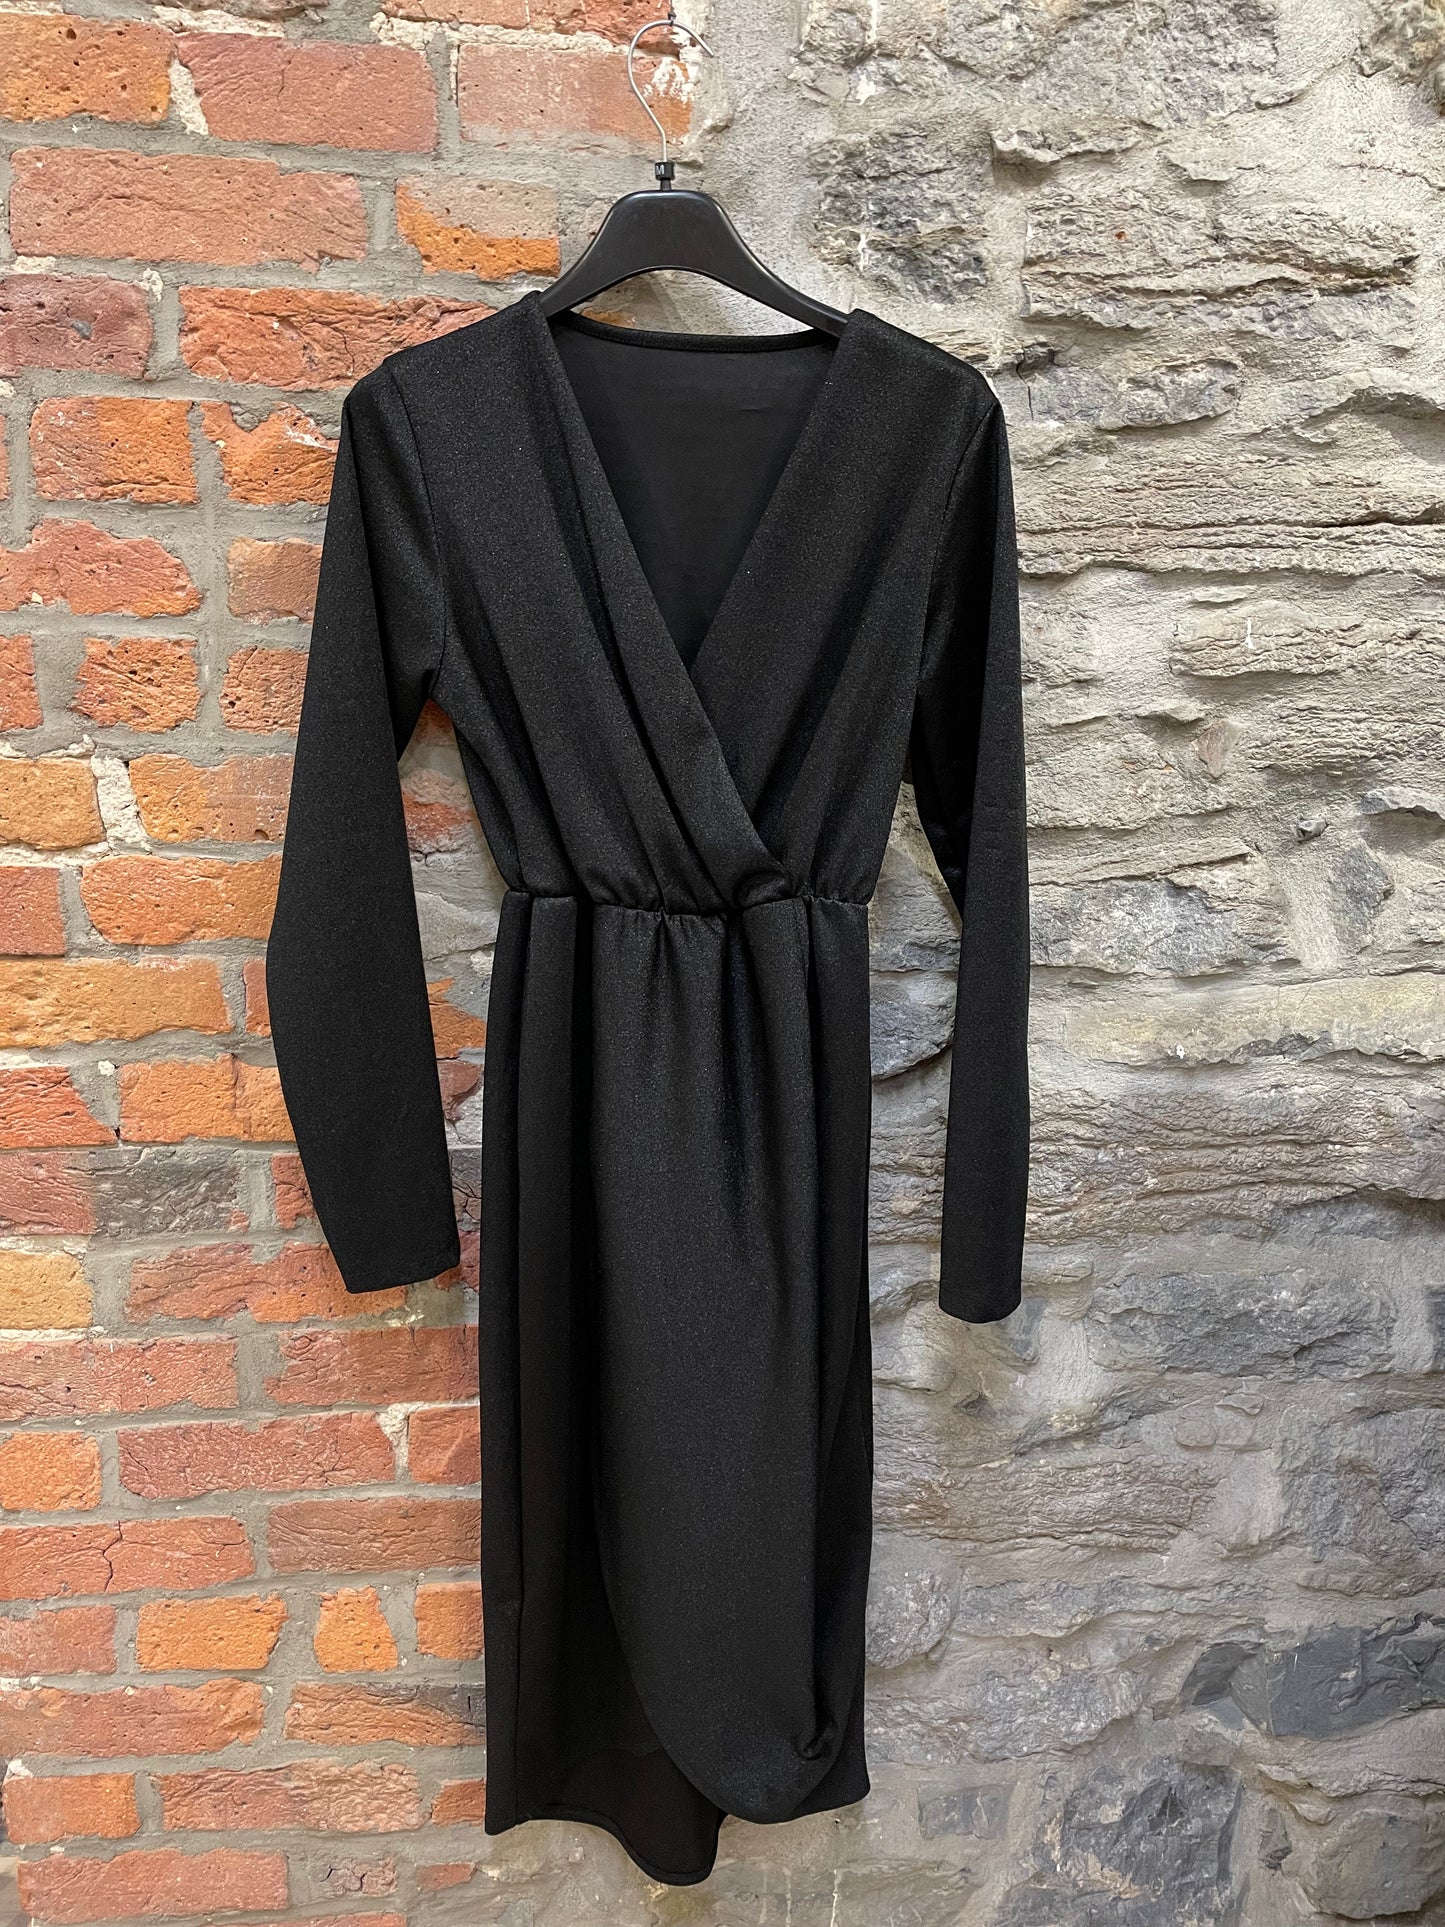 K-2429- Robe / Dress